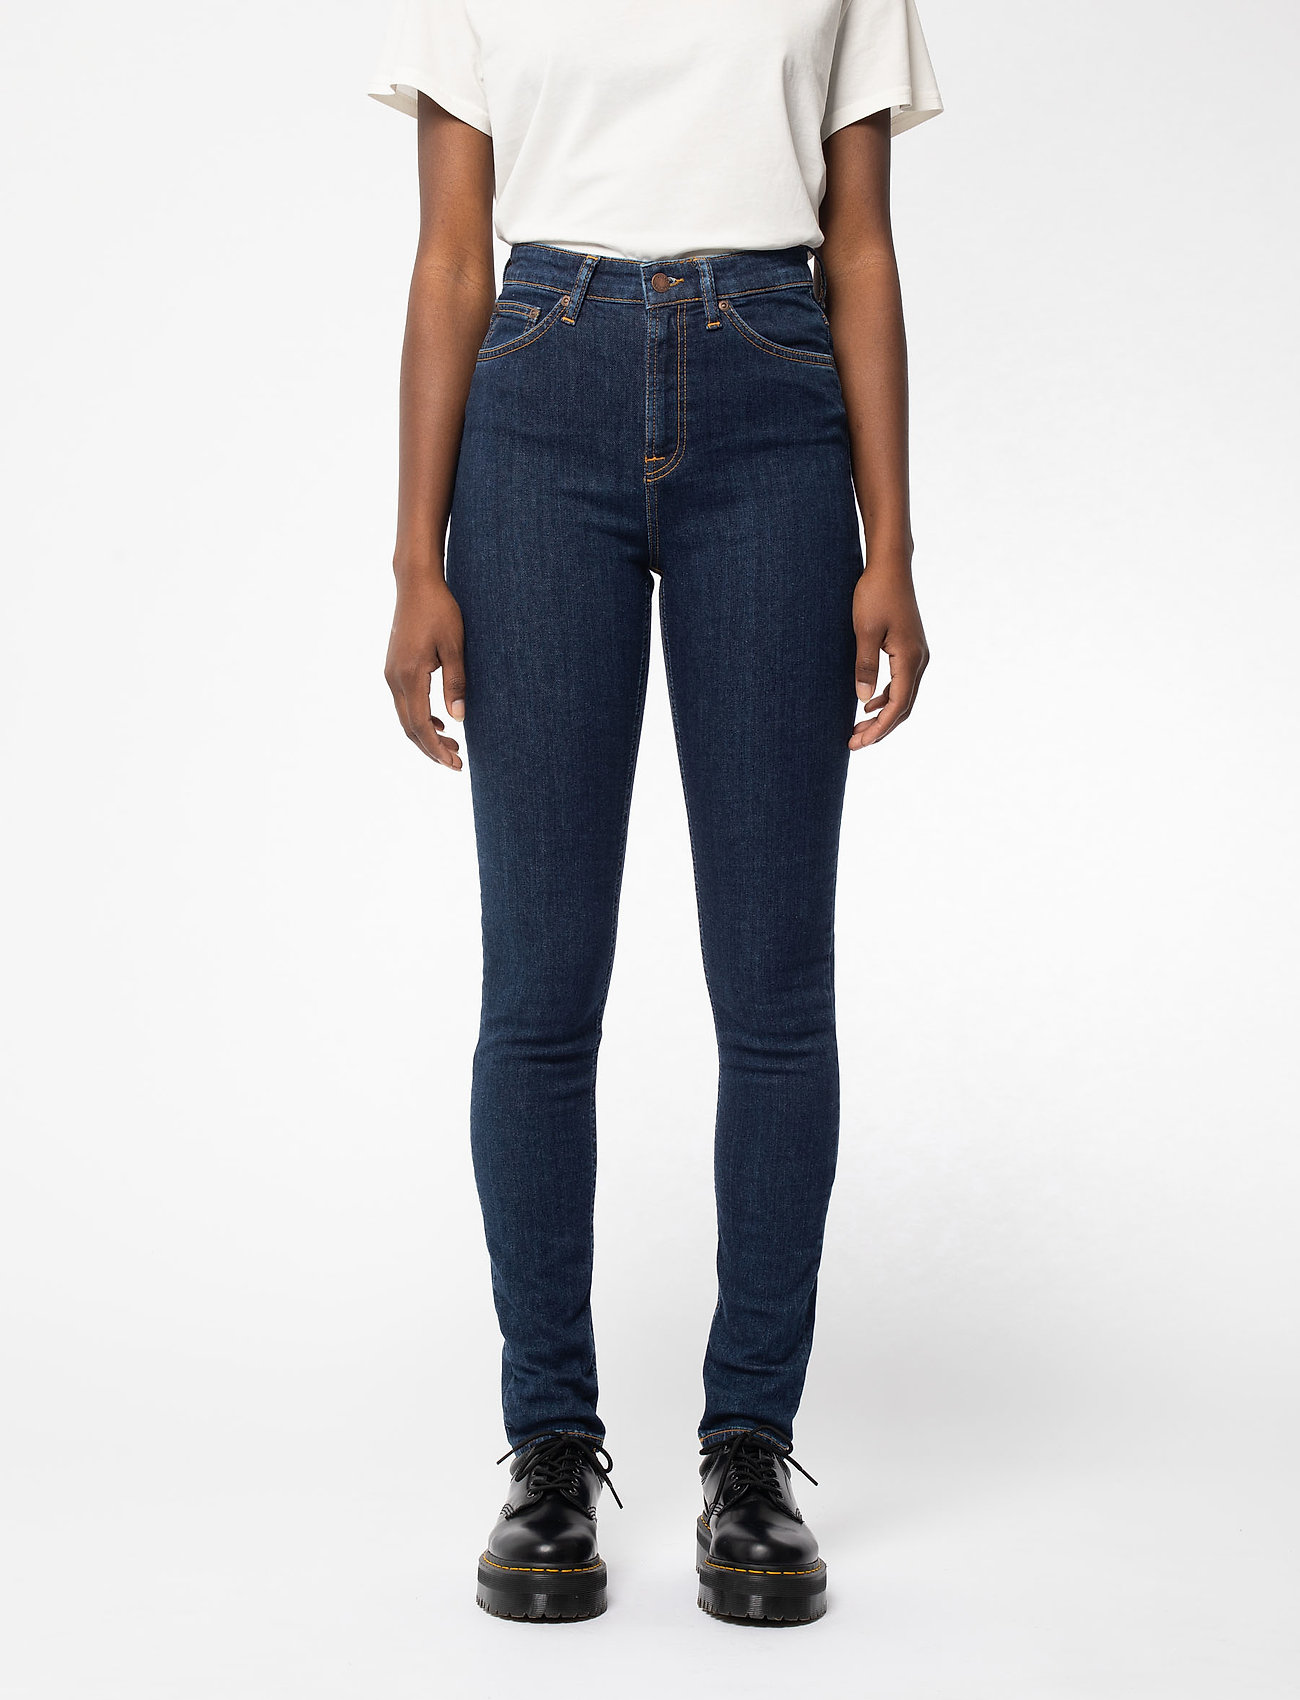 Maken overschrijving Dankzegging Nudie Jeans Hightop Tilde - Skinny jeans - Boozt.com